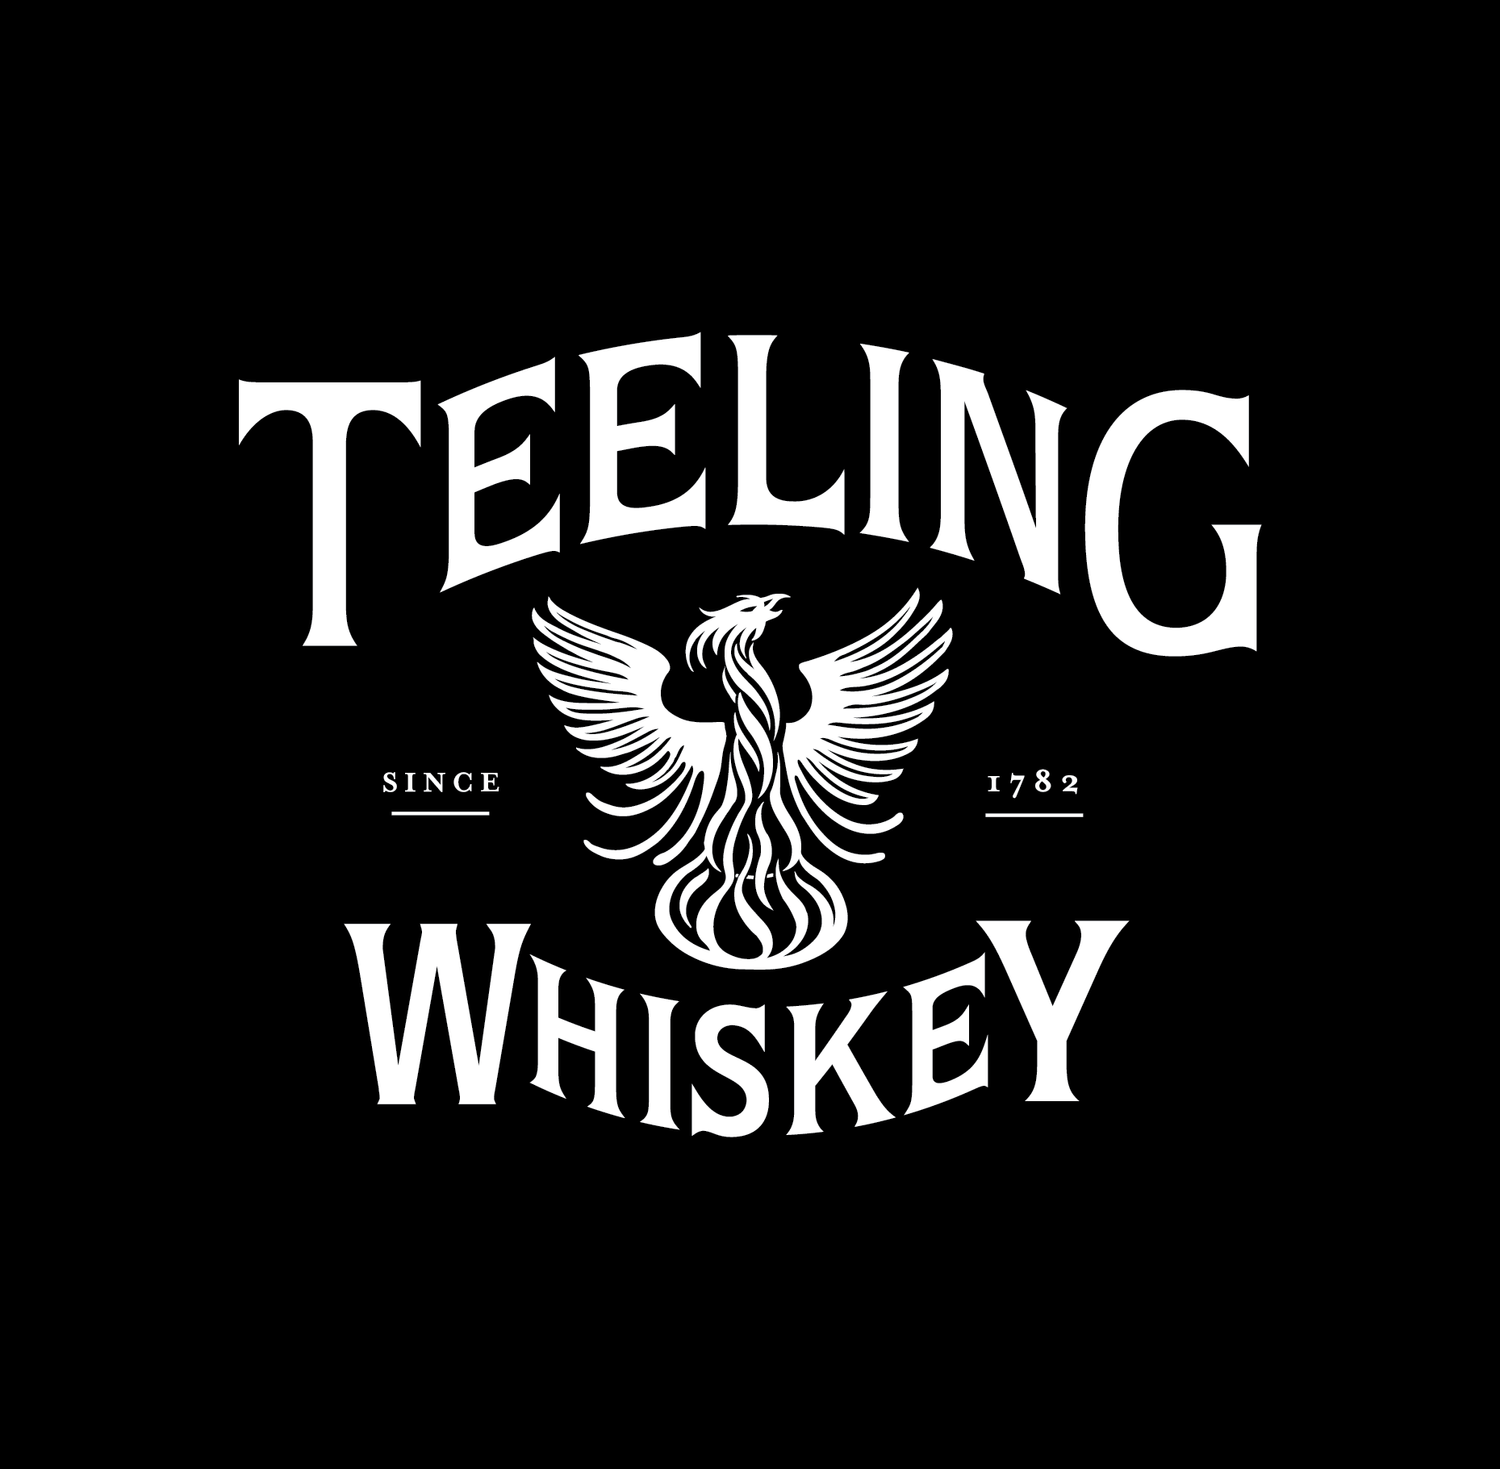 Teeling Whiskey Logos